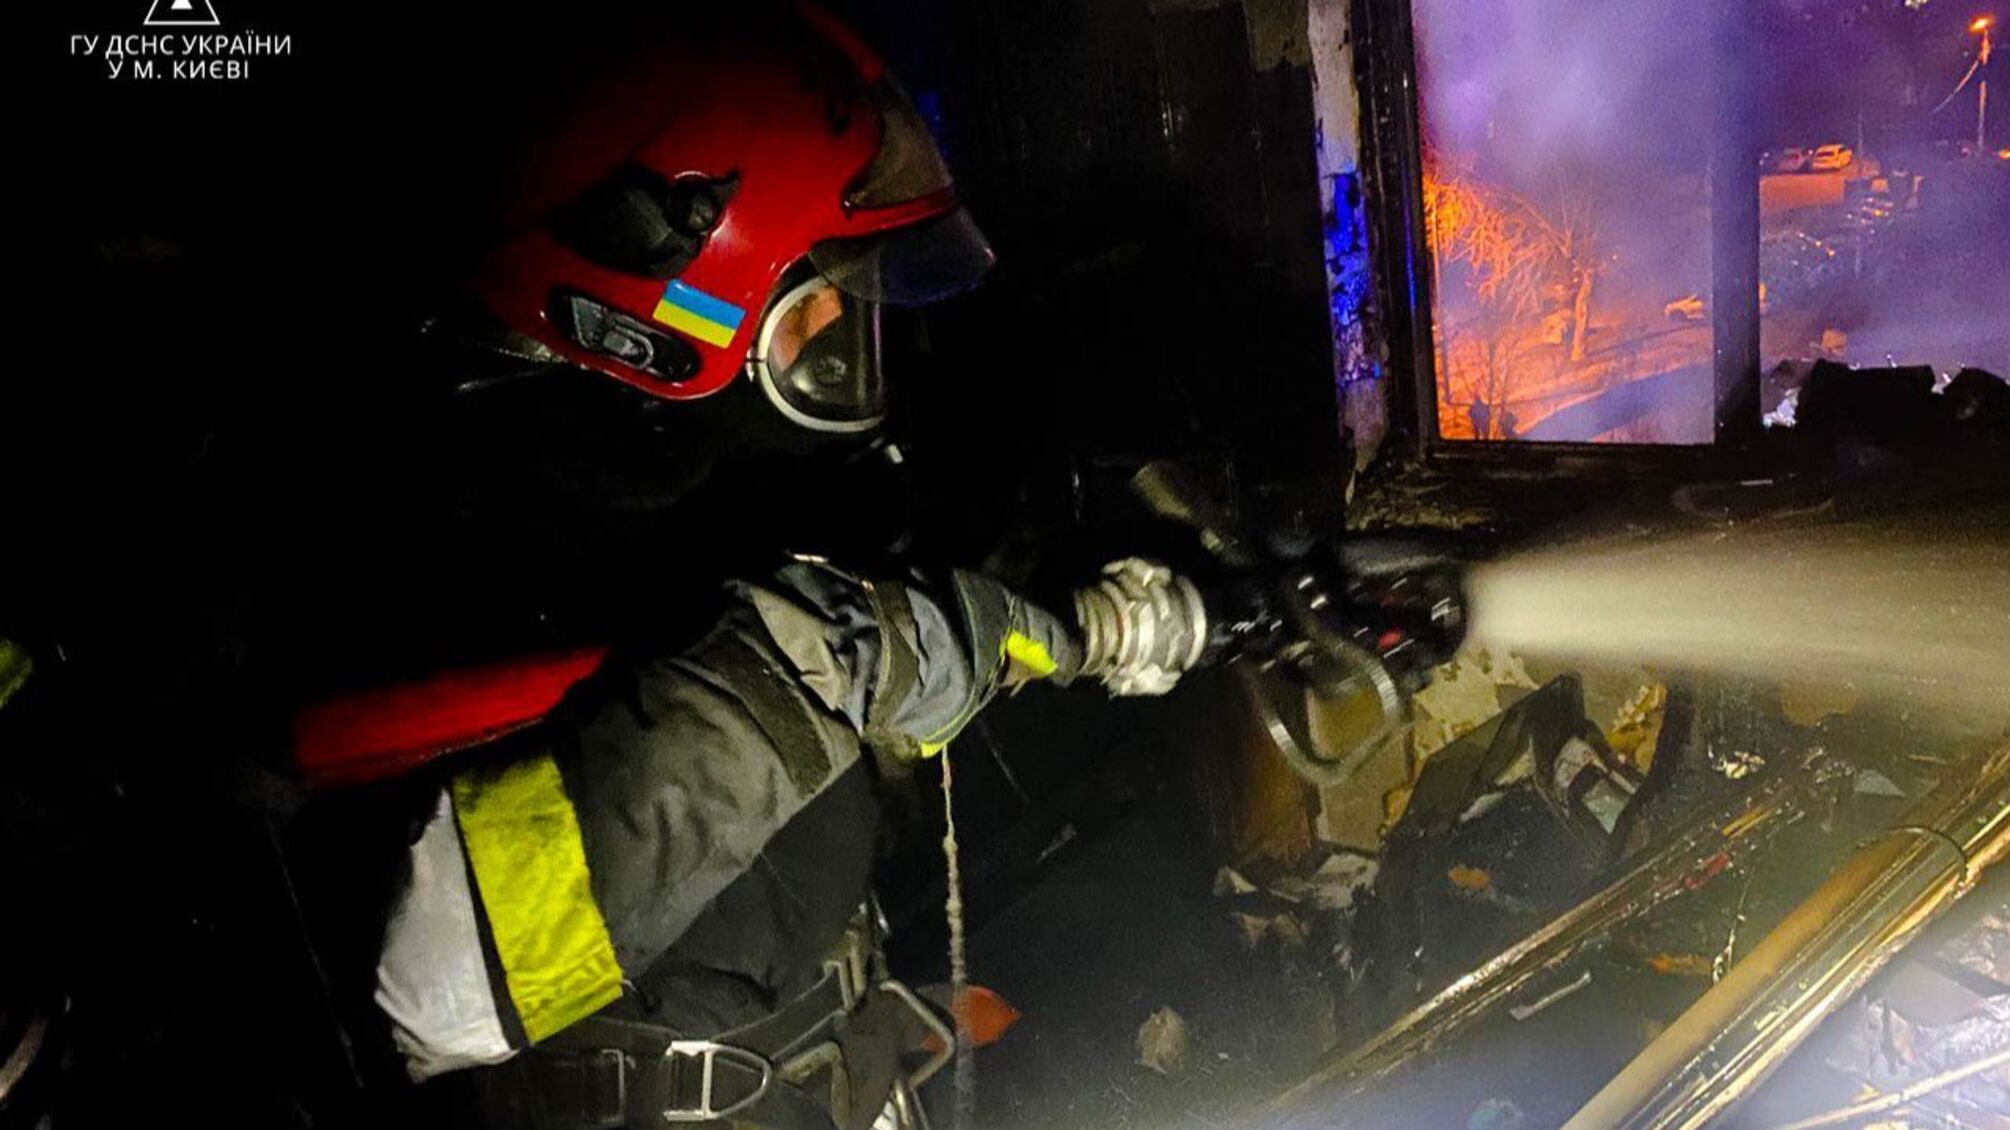 Масштабный пожар в киевской многоэтажке: есть погибший (фото)